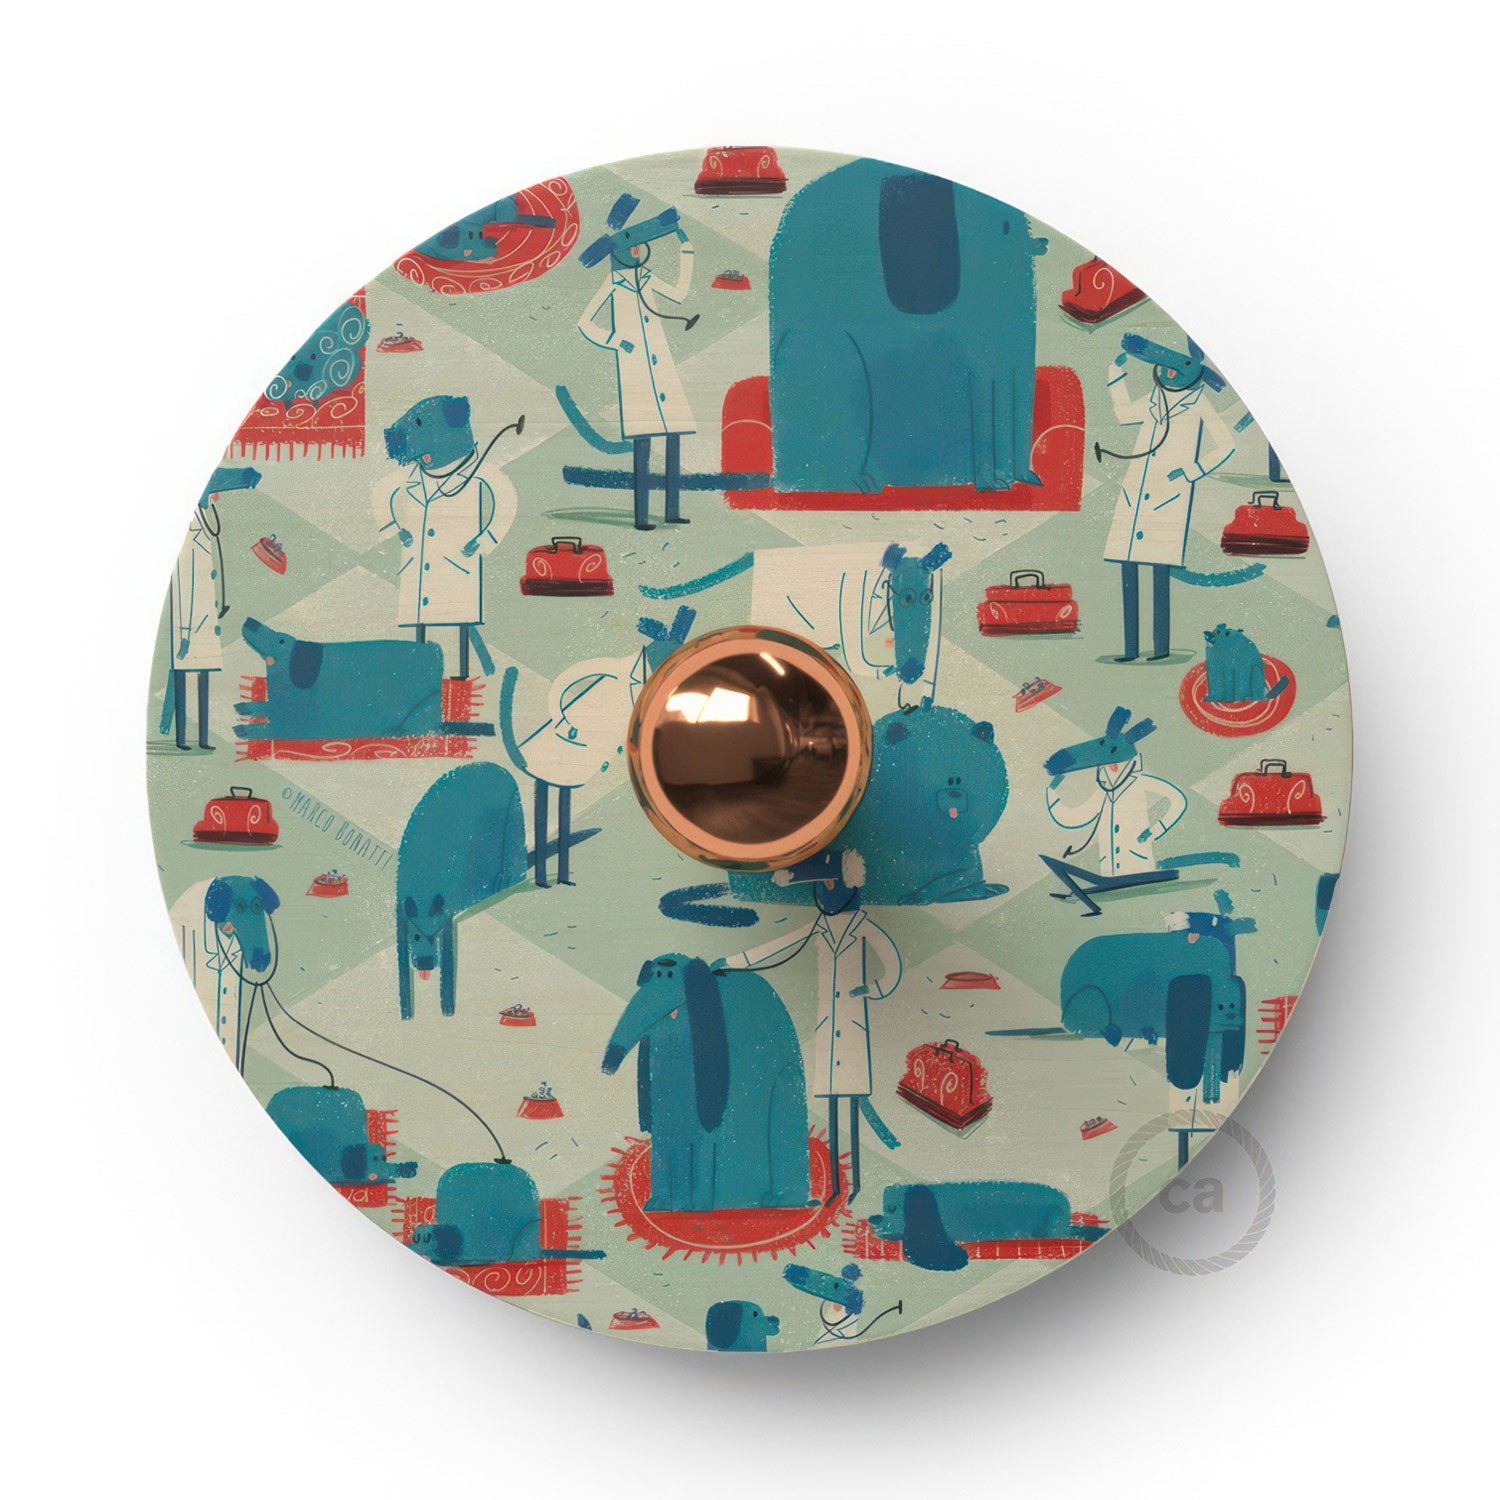 Fermaluce Funny Pop drveni UFO disk obostrano ilustriran od strane različitih umjetnika